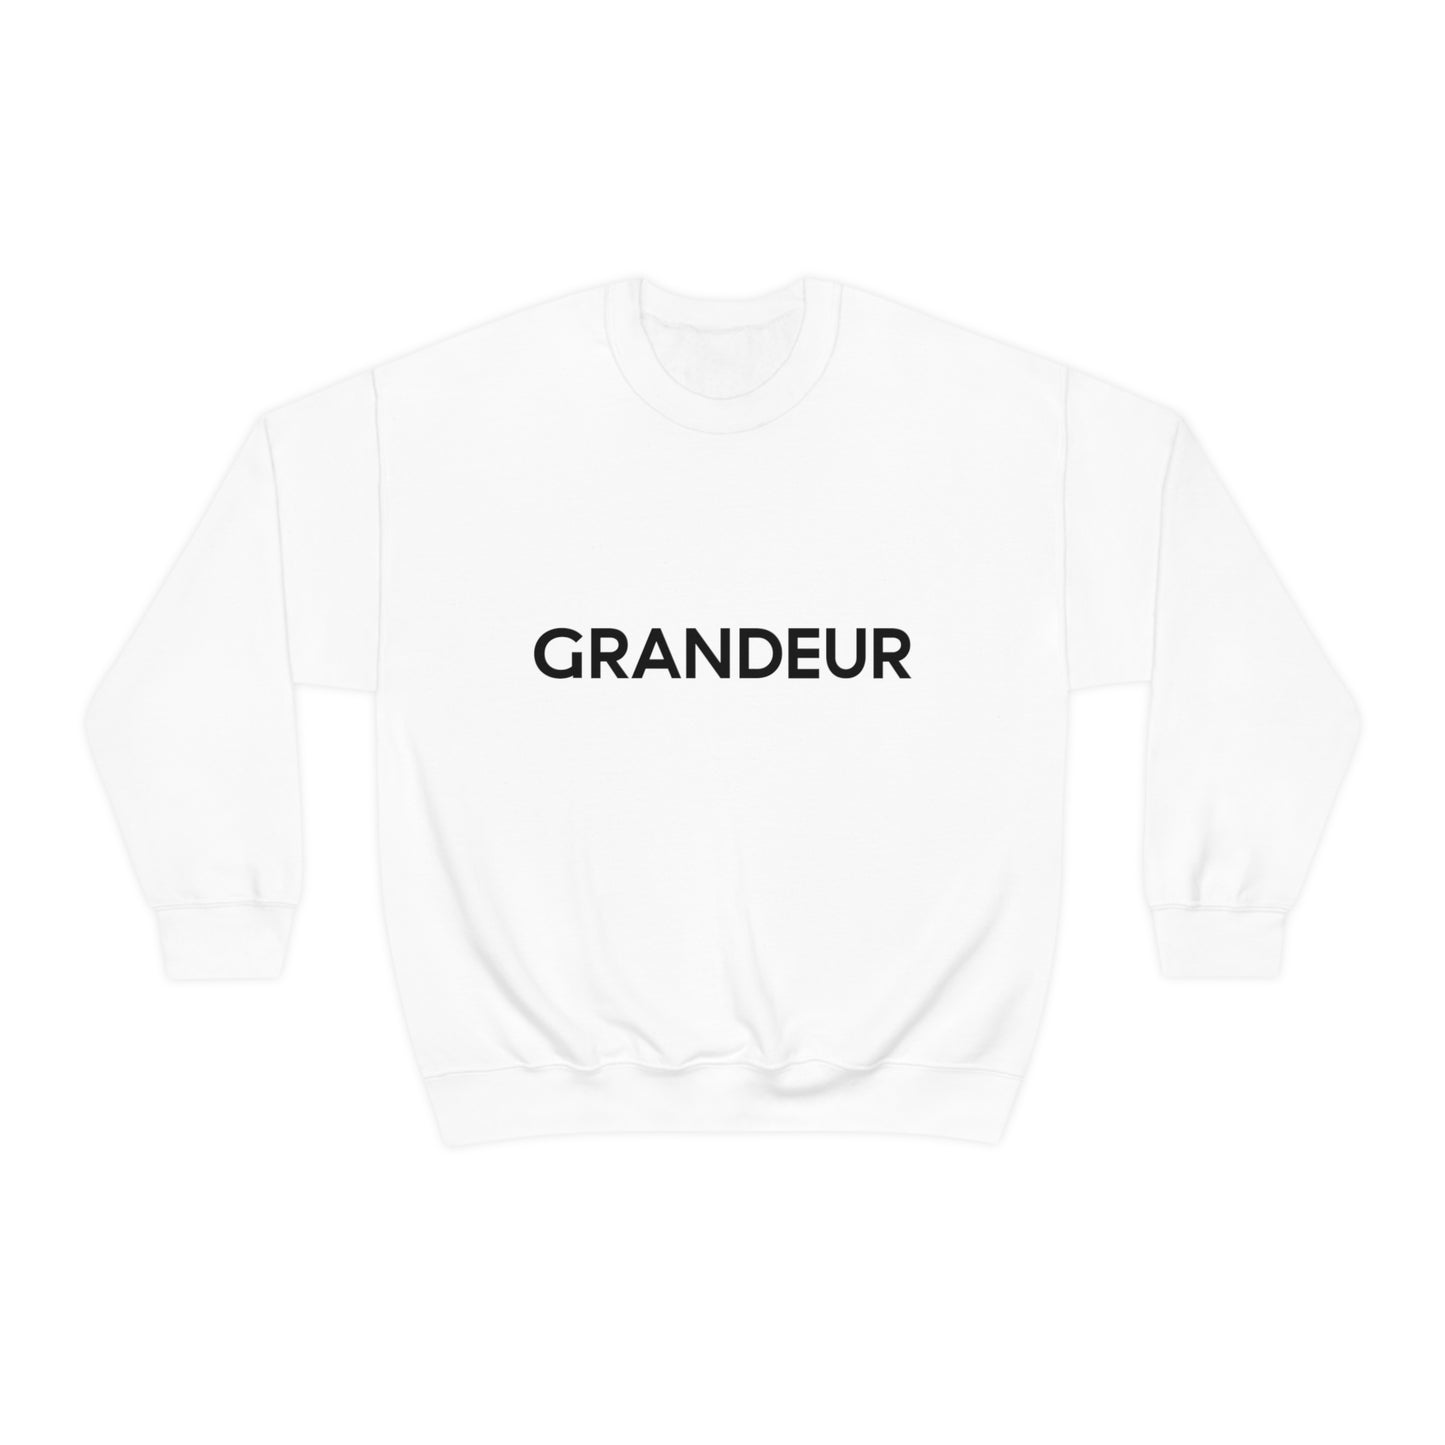 GRANDEUR® Unisex Heavy Blend™ Crewneck Sweatshirt Named